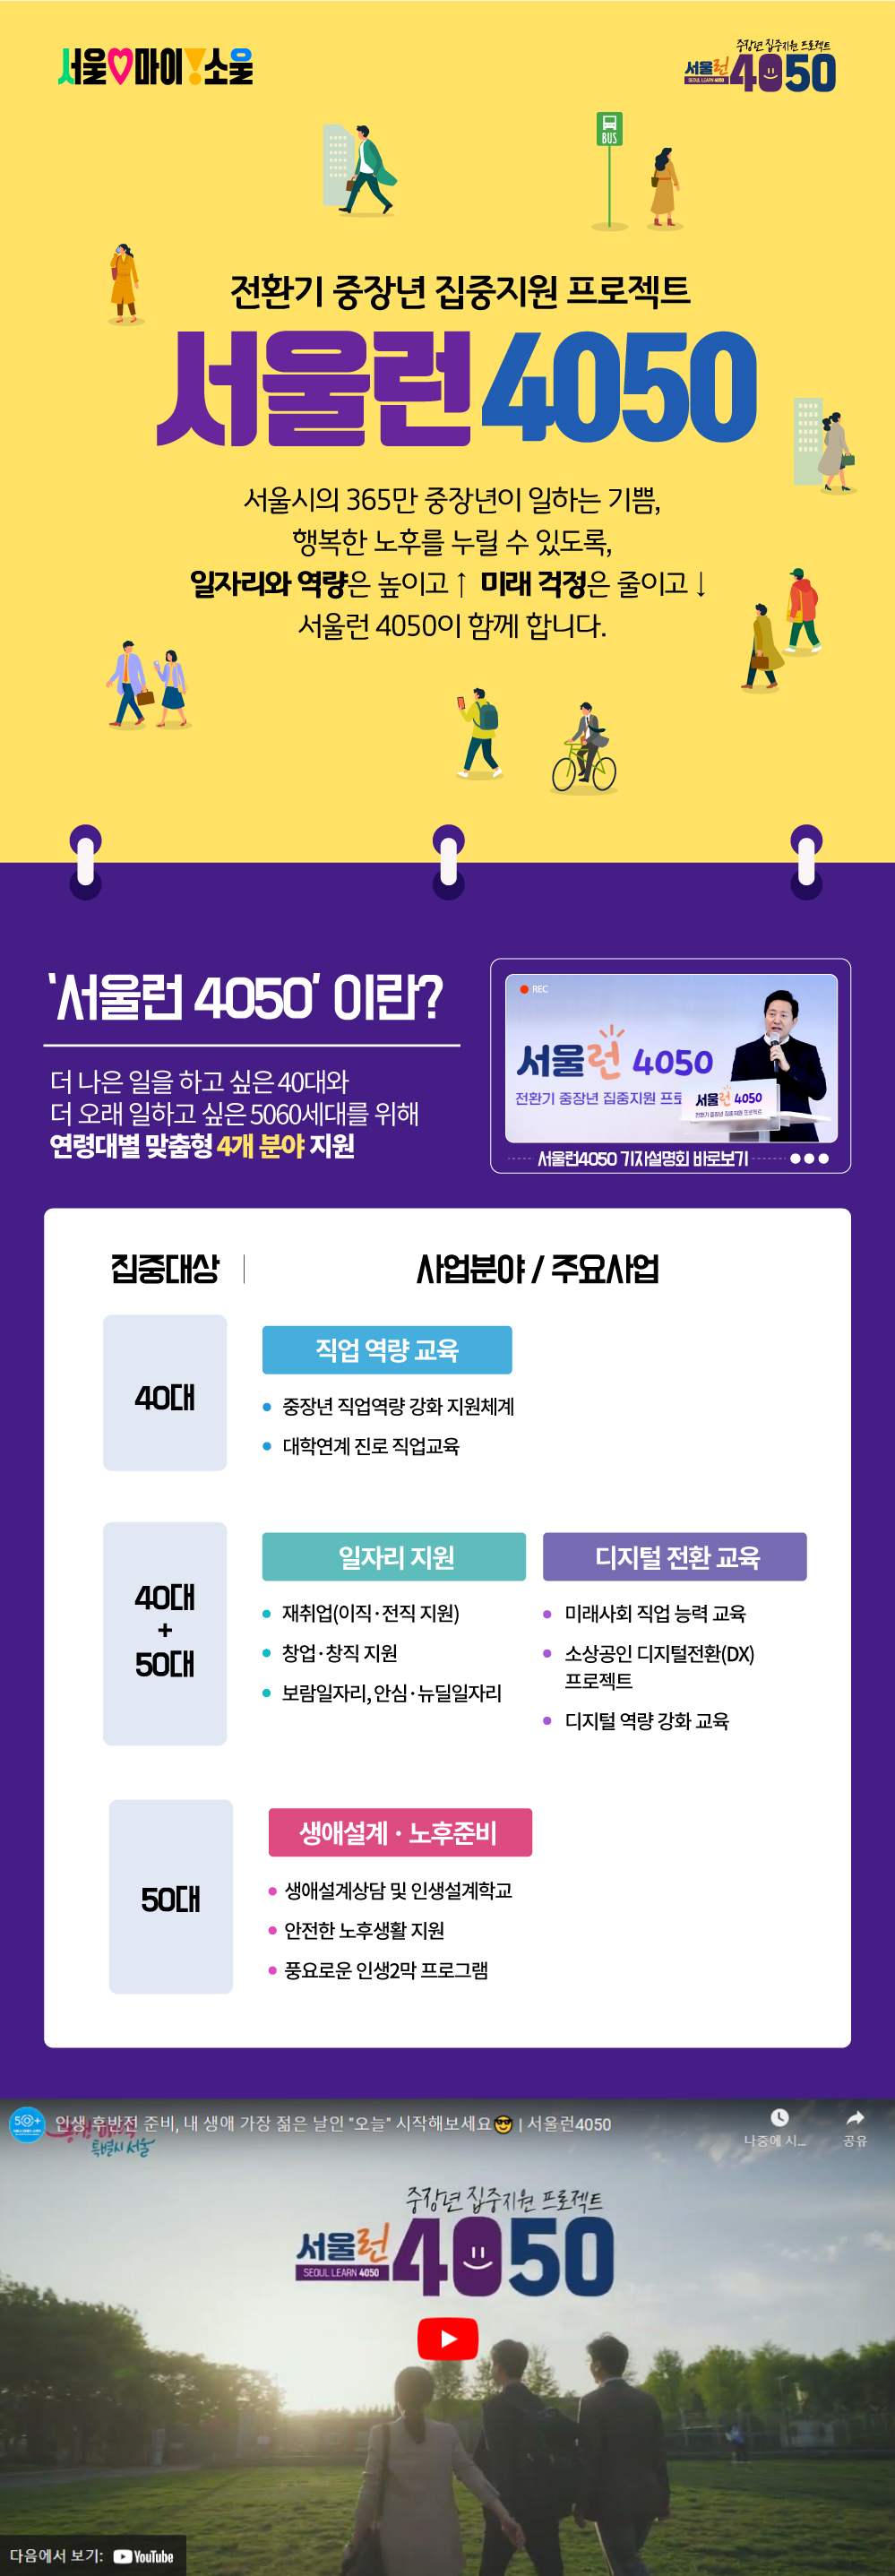 서울런4050 소개